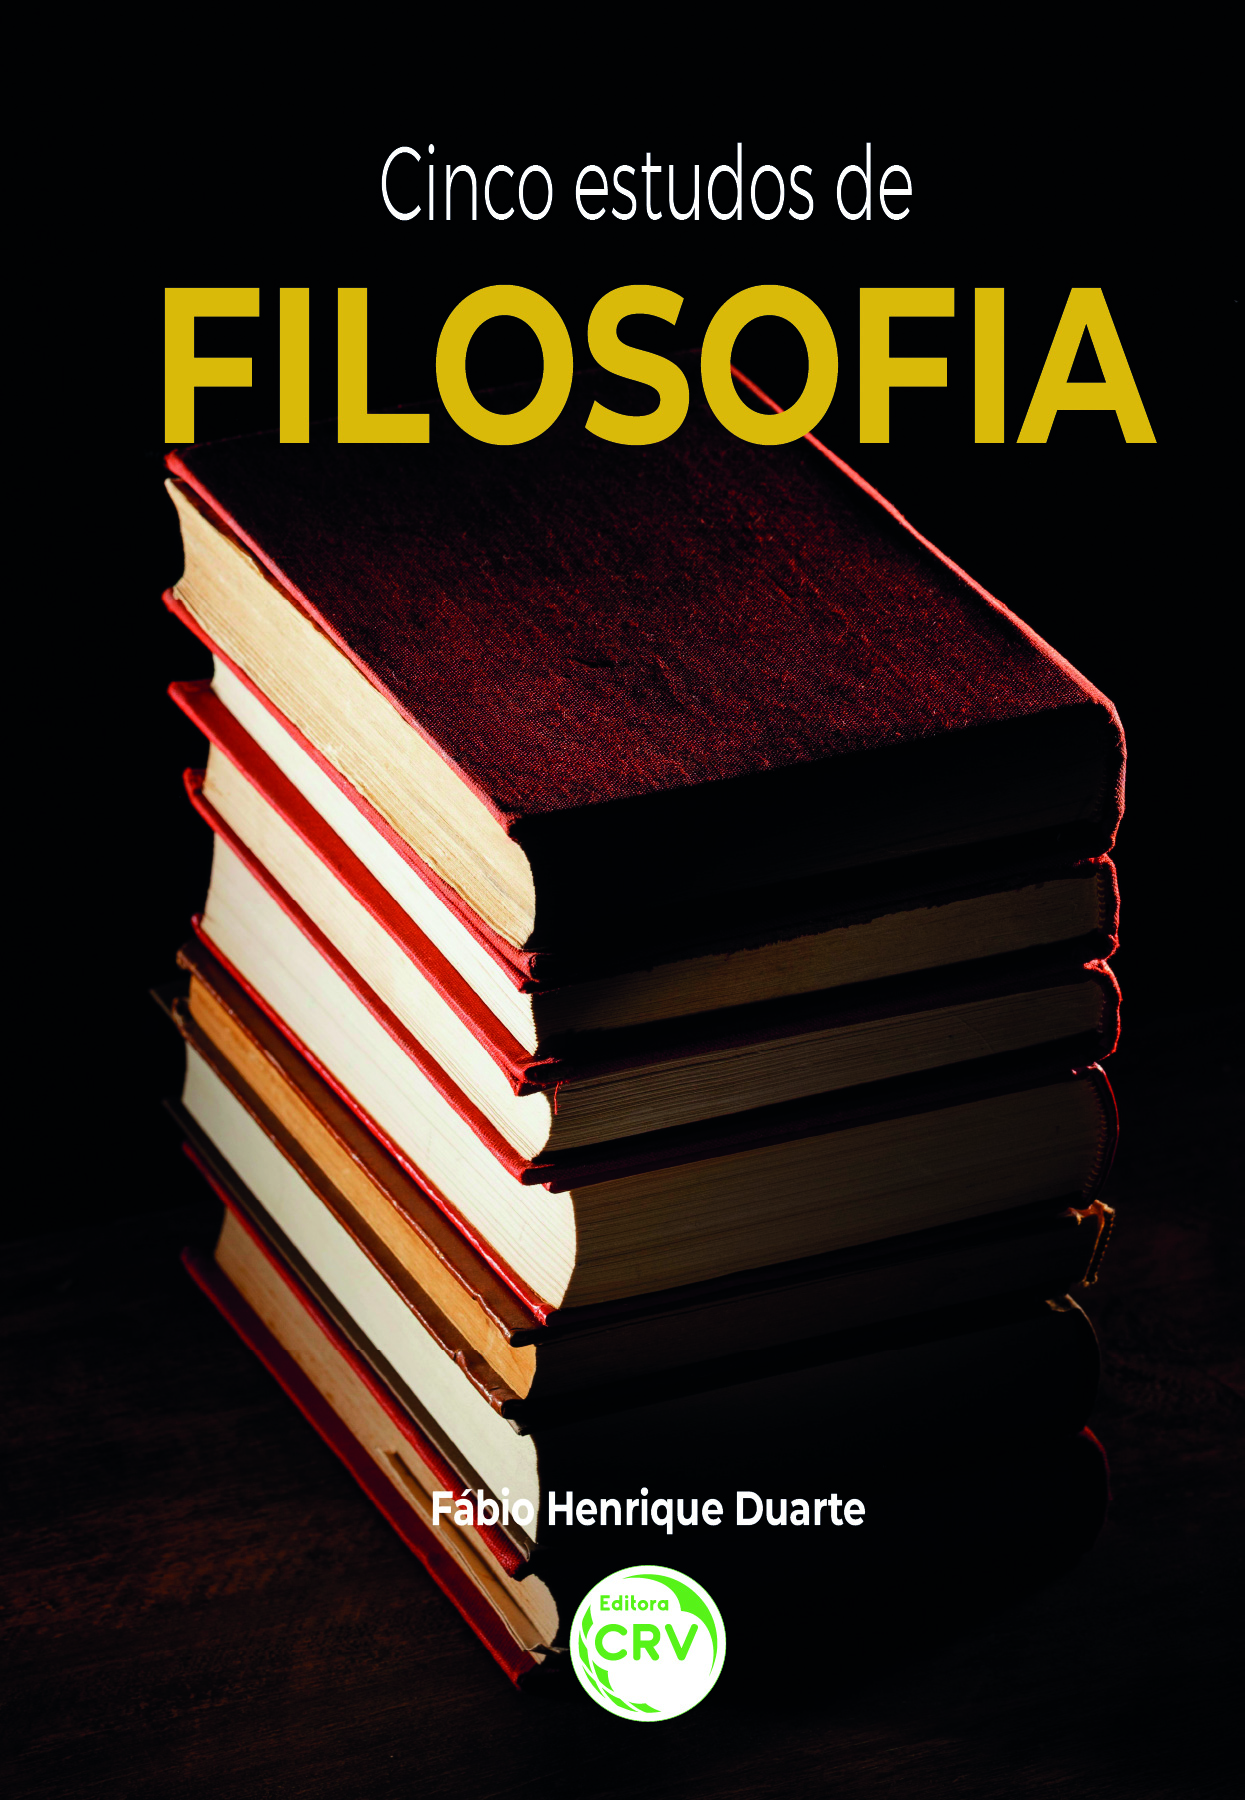 Capa do livro: CINCO ESTUDOS DE FILOSOFIA